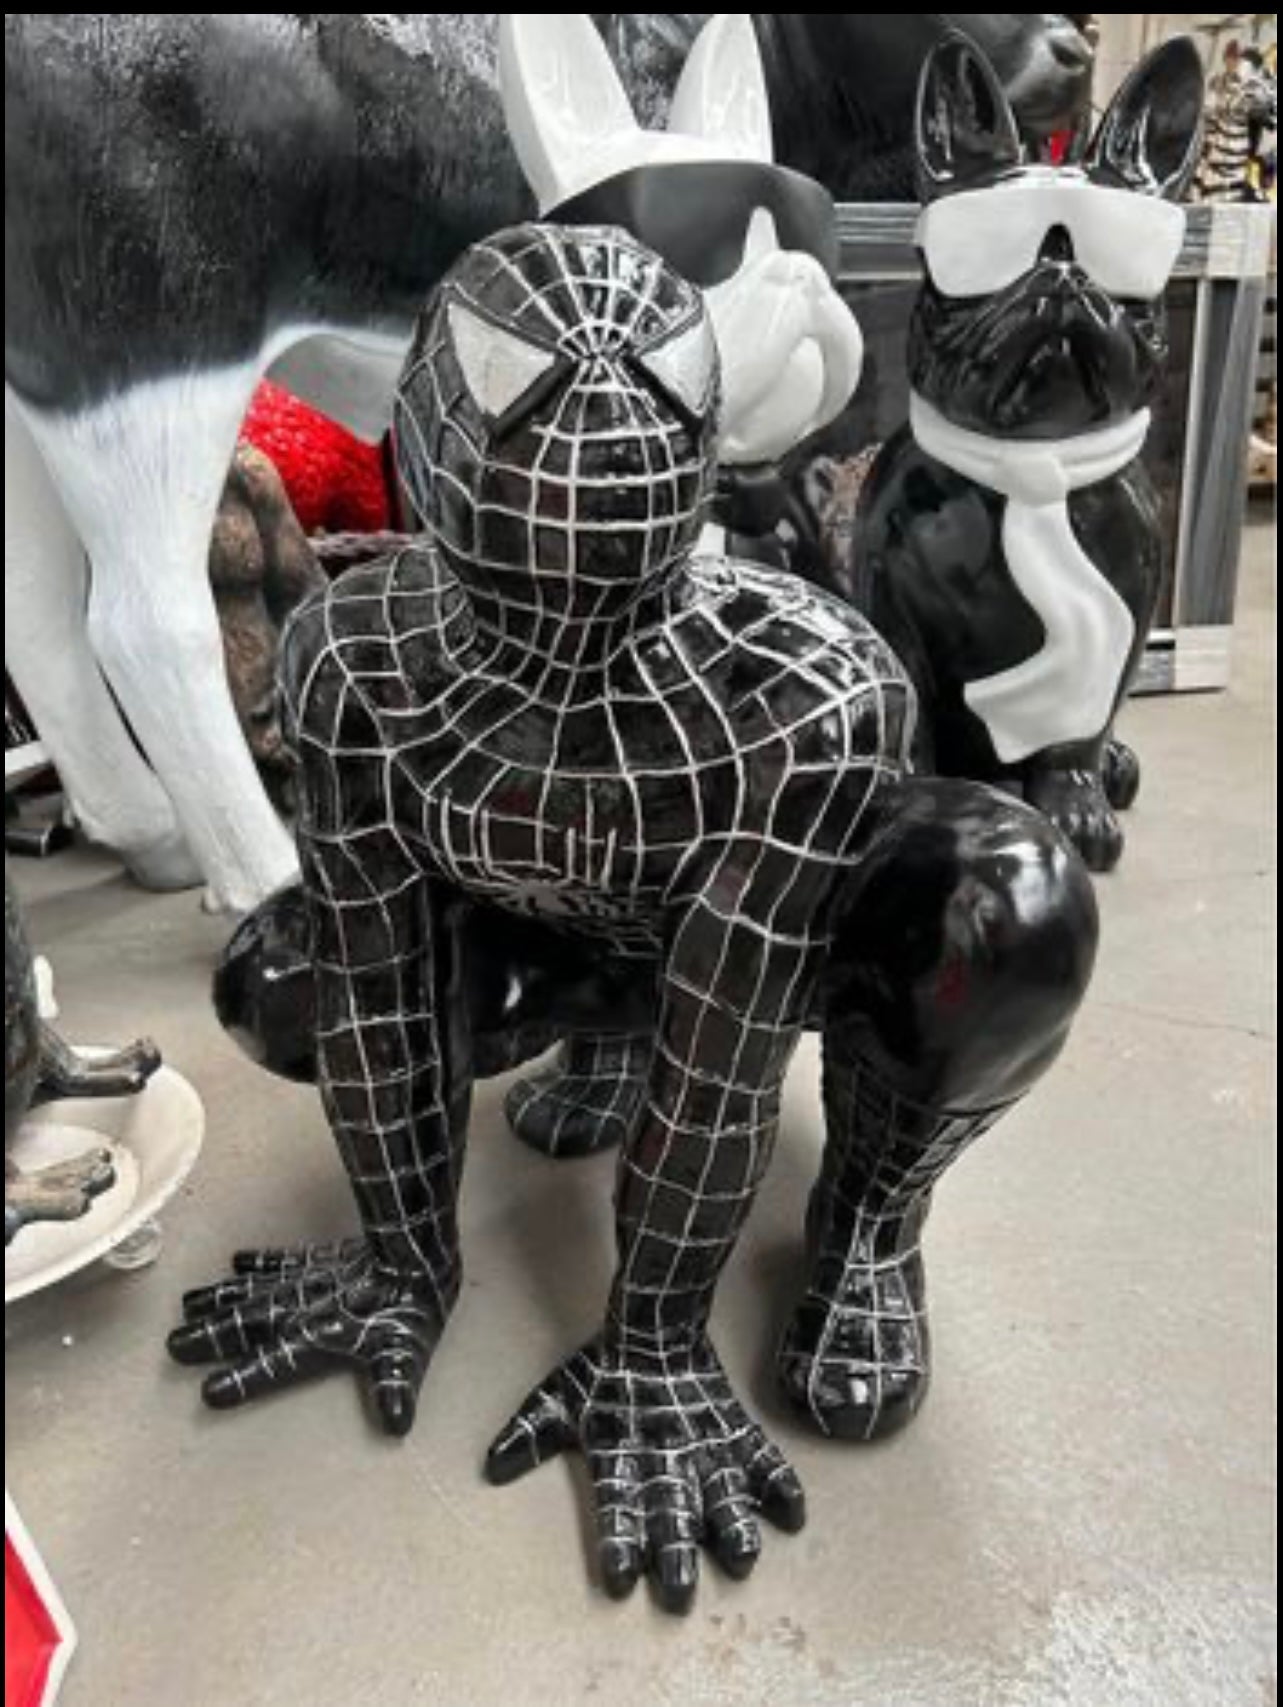 Spider-Man Sculpture